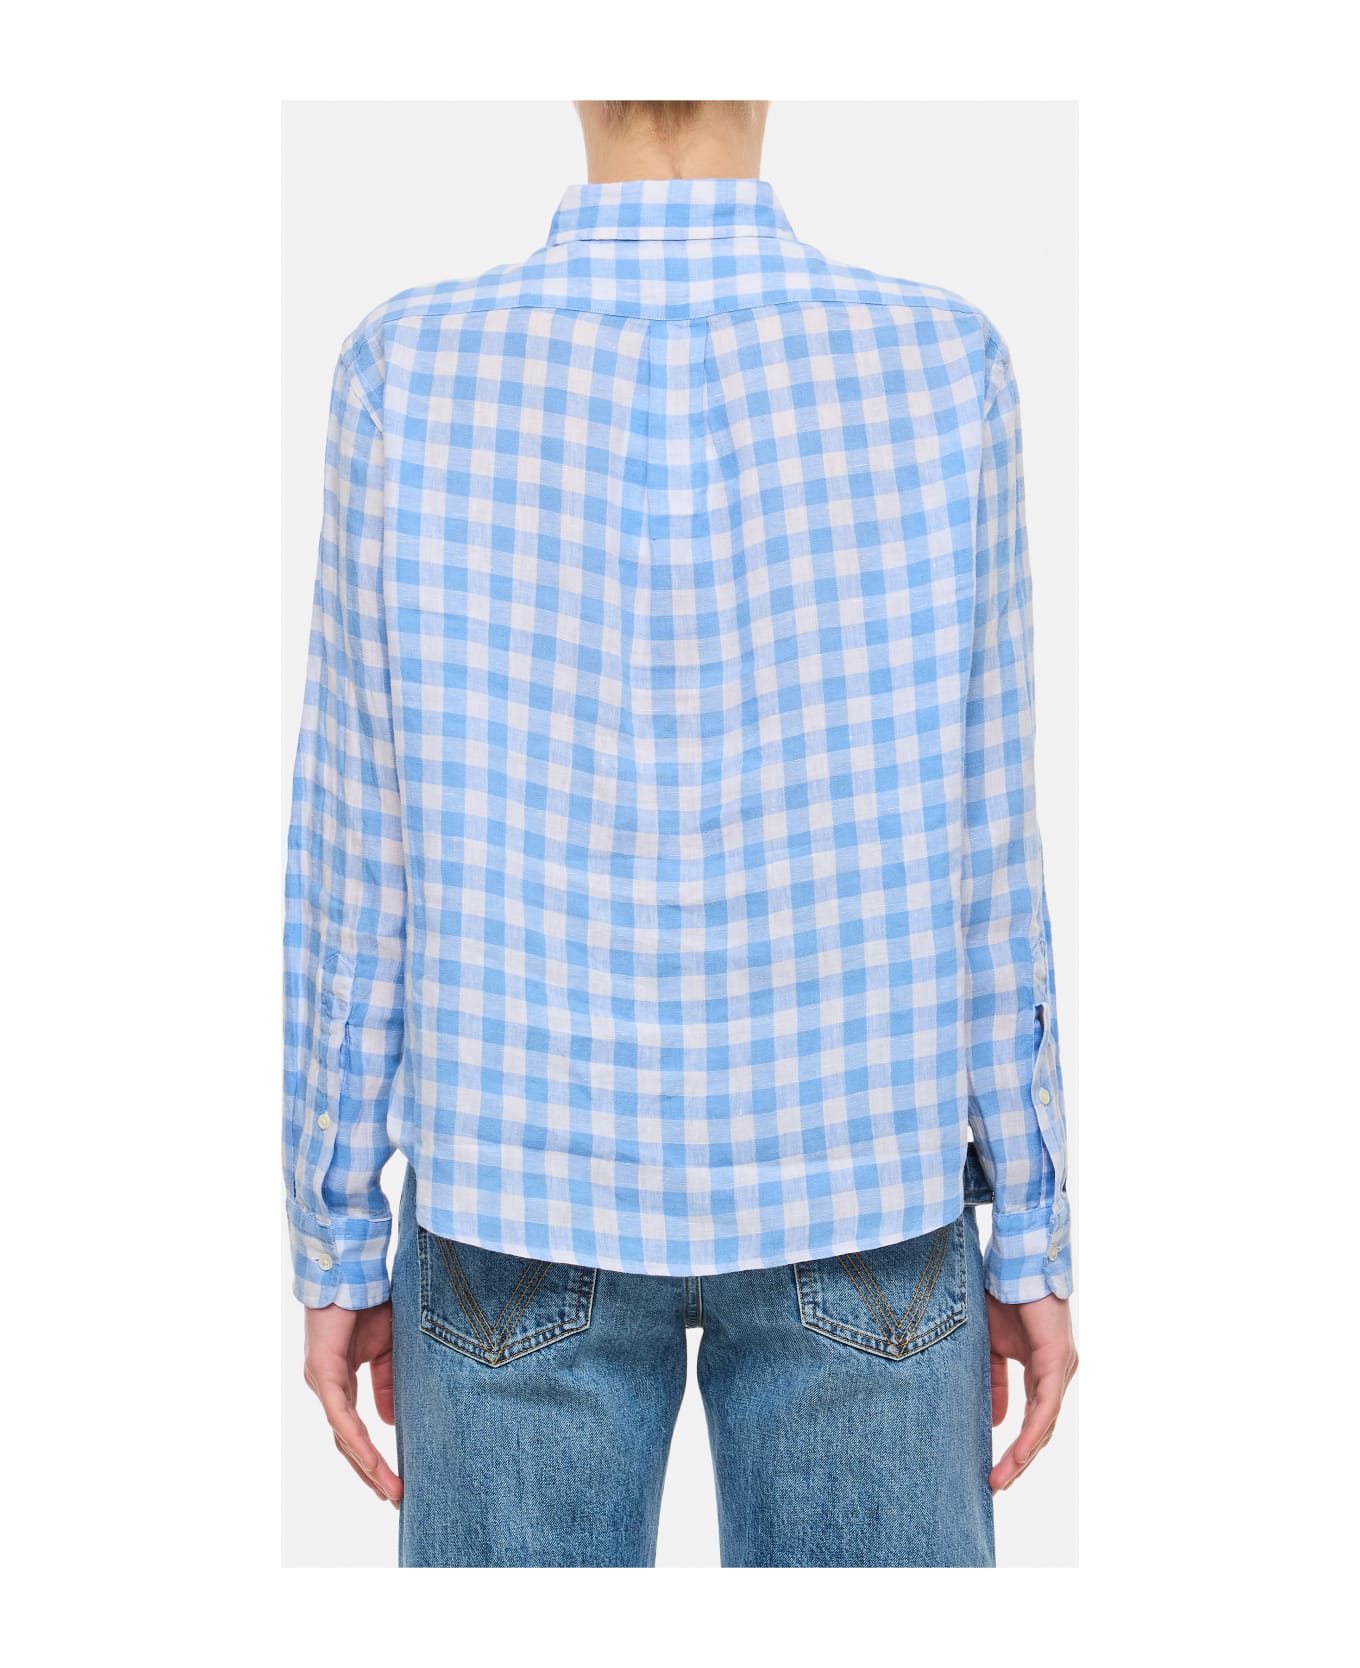 Polo Ralph Lauren Linen Crop Shirt - A Austin Blue White